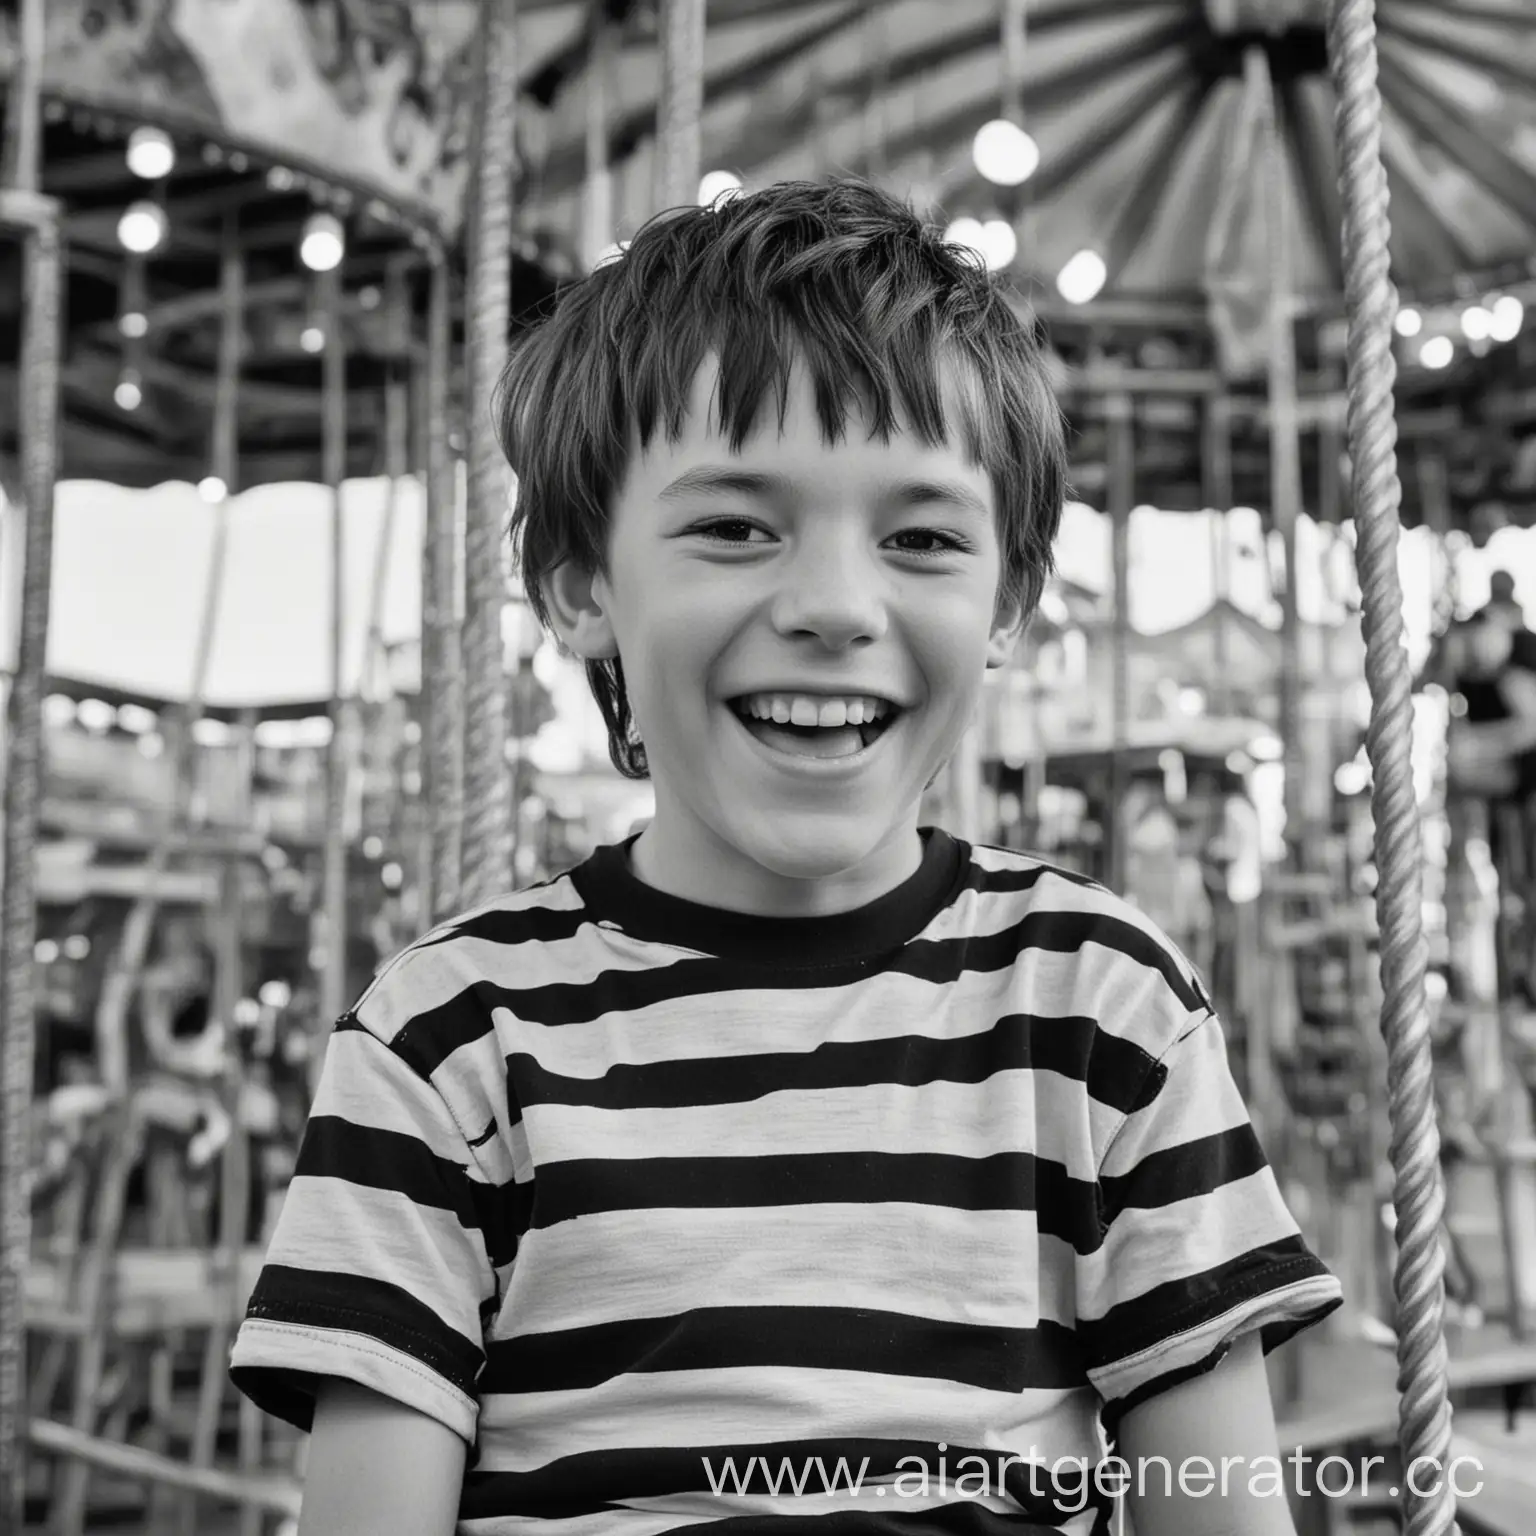 Реальная фотография. Мальчик 10 лет в парке аттракционов катается на высоких каруселях Он смеётся. На нём чёрно-белая полосатая футболка.